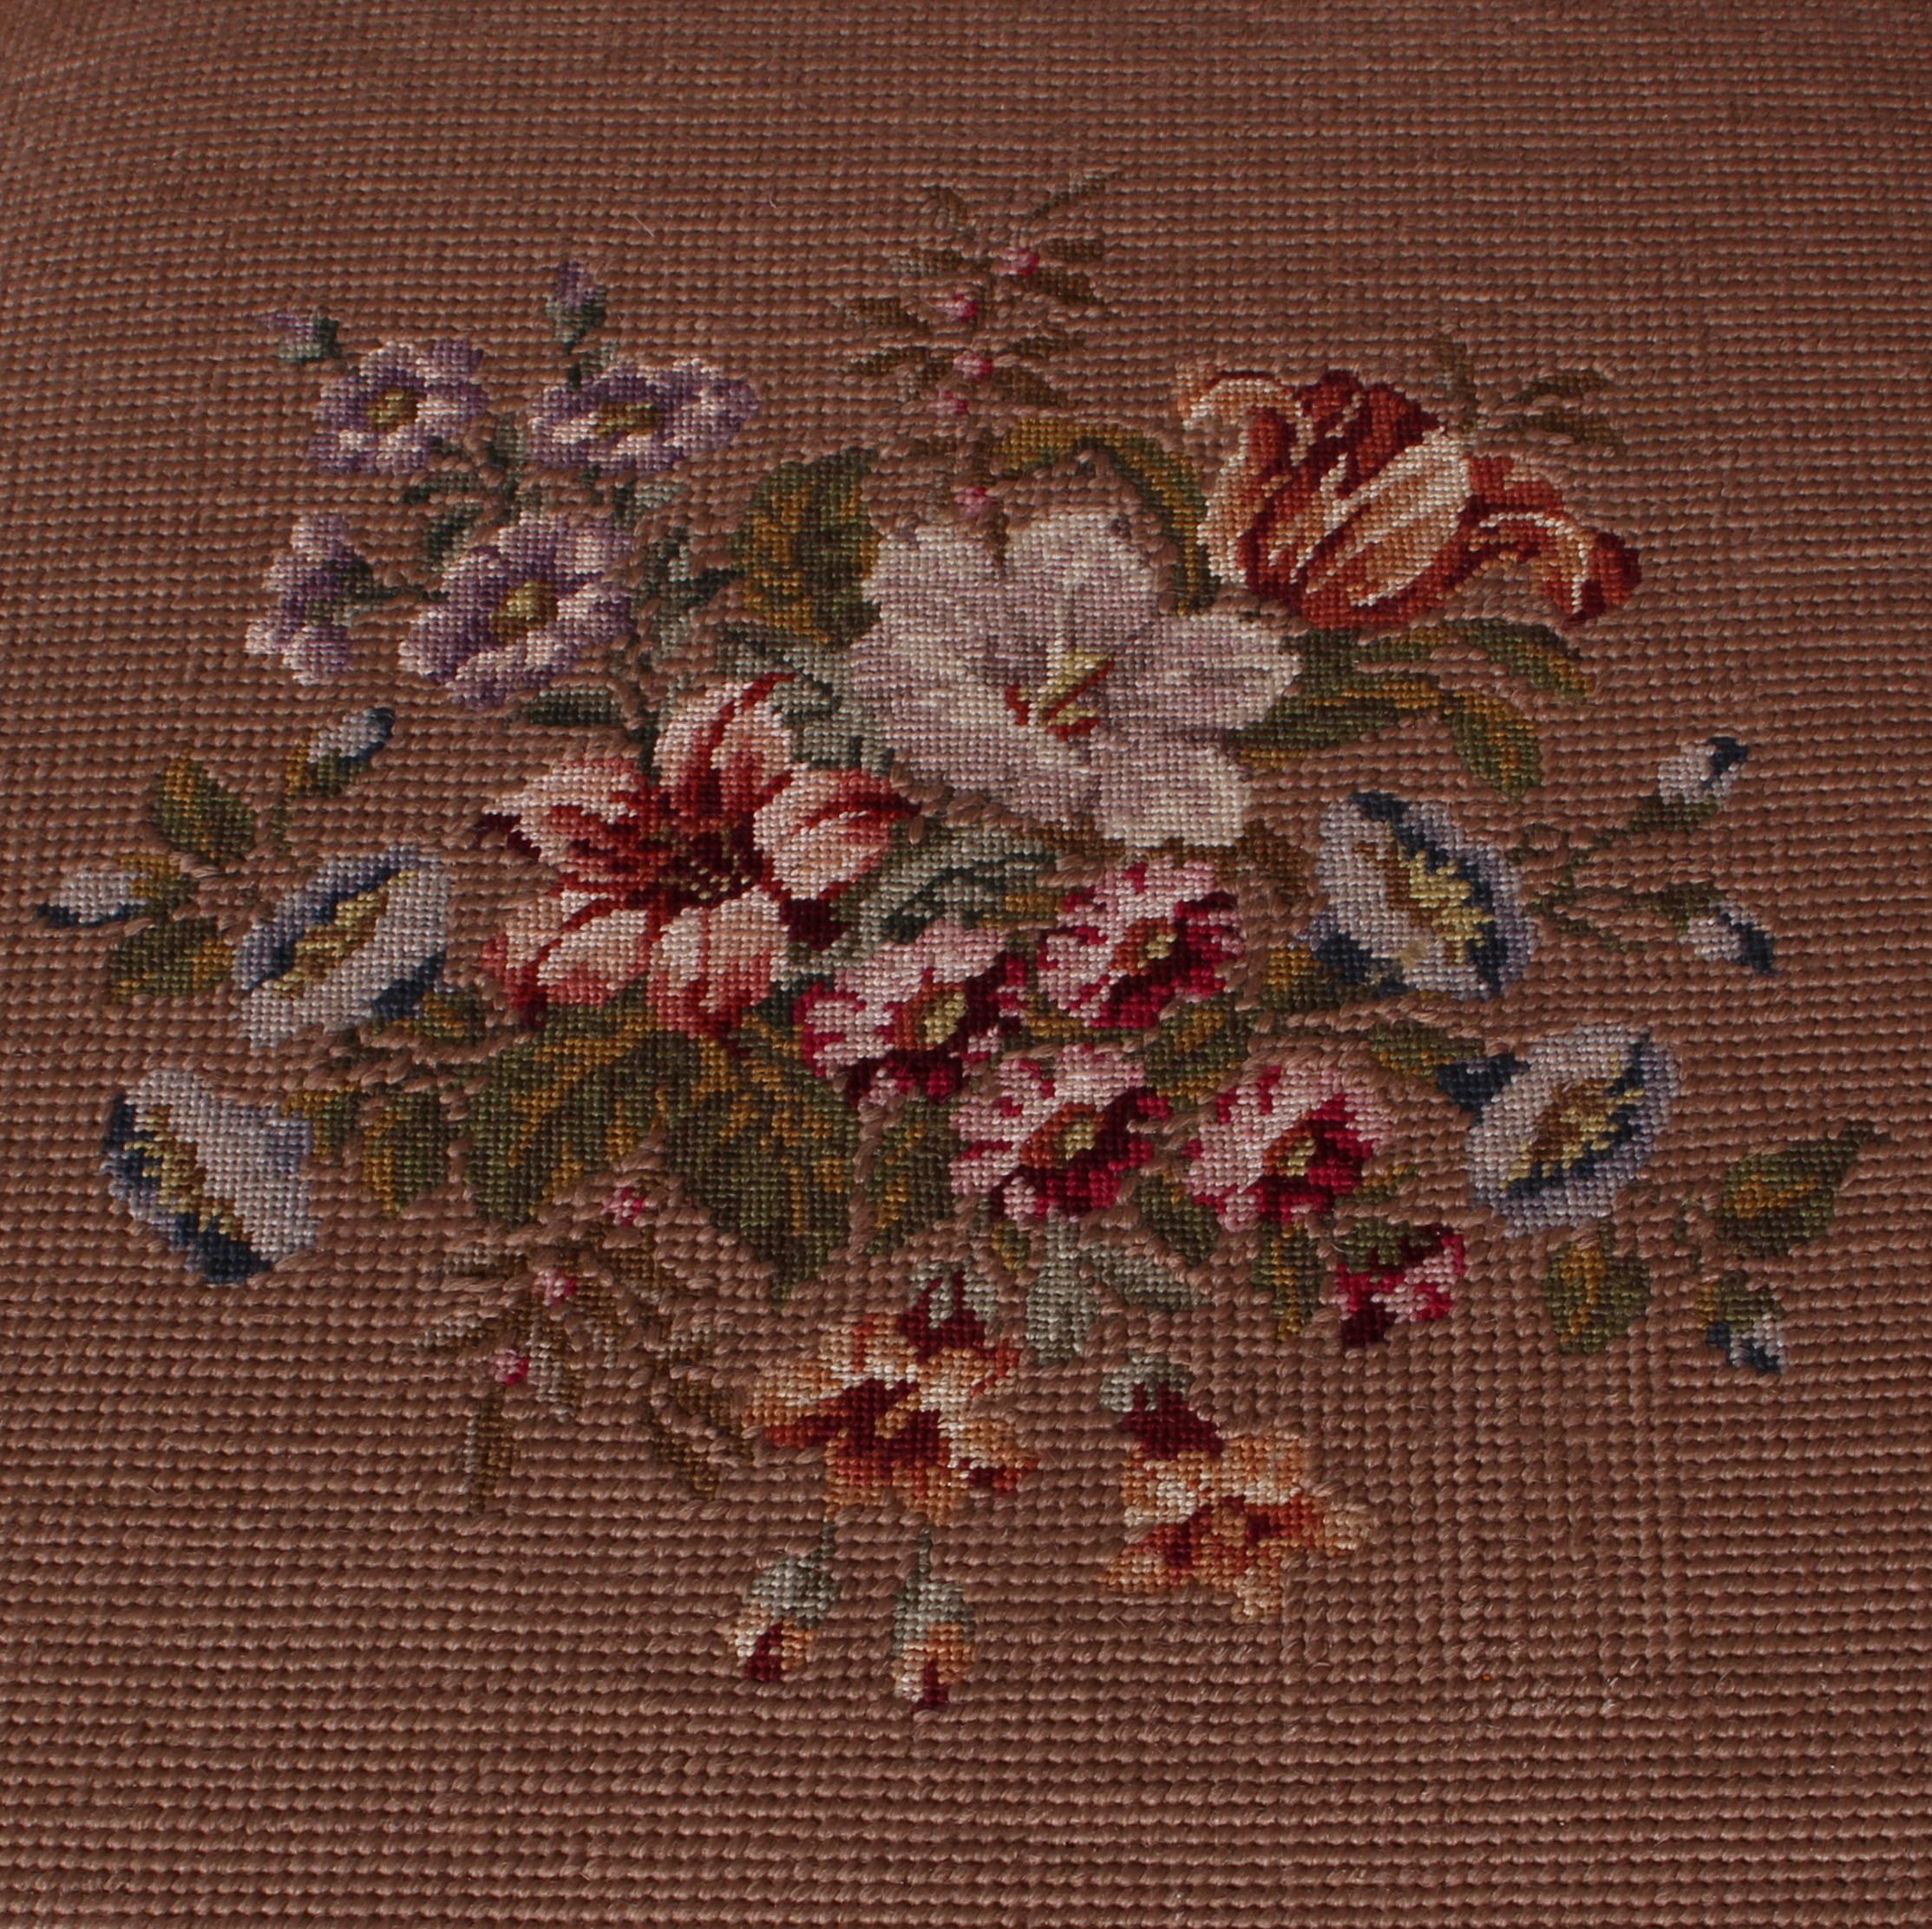 art nouveau oak chair Jugendstil Nikolai Schule embroidery a. 1910 exc condition 1